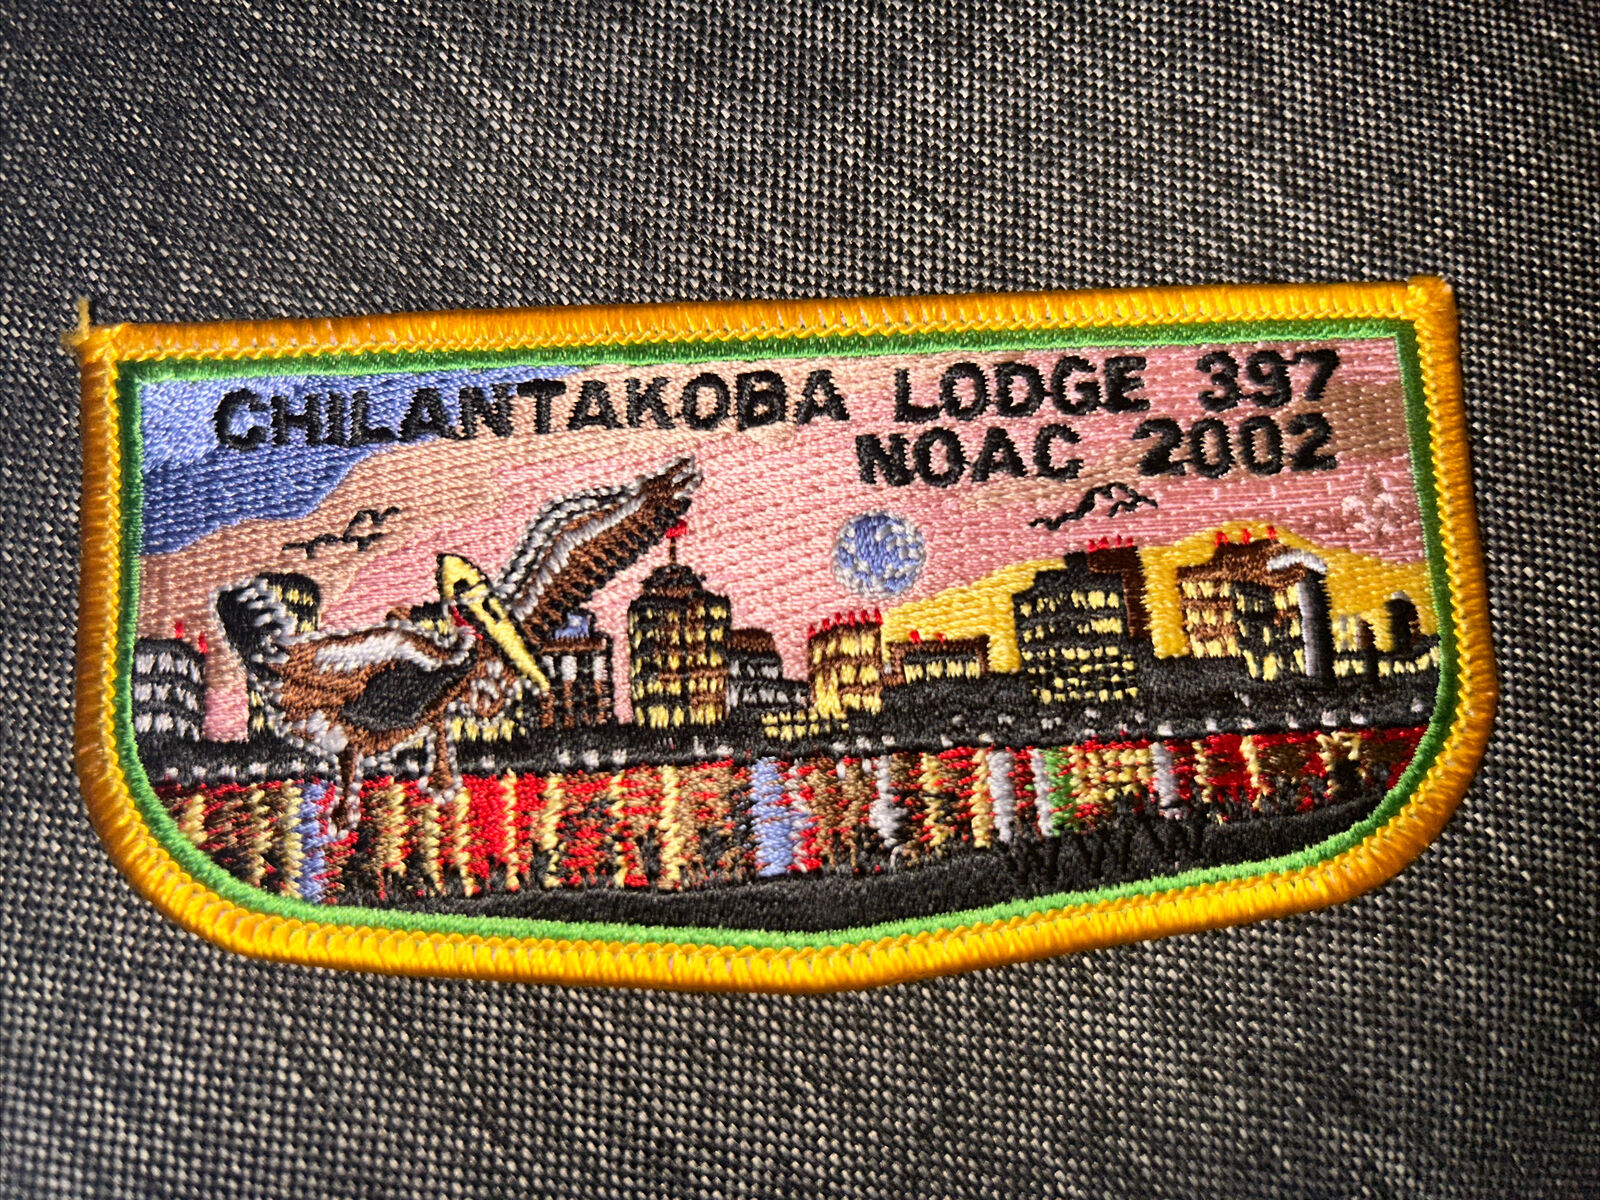 Mint OA Flap Lodge 397 Chilantakoba Yellow  Border 2002 Noac